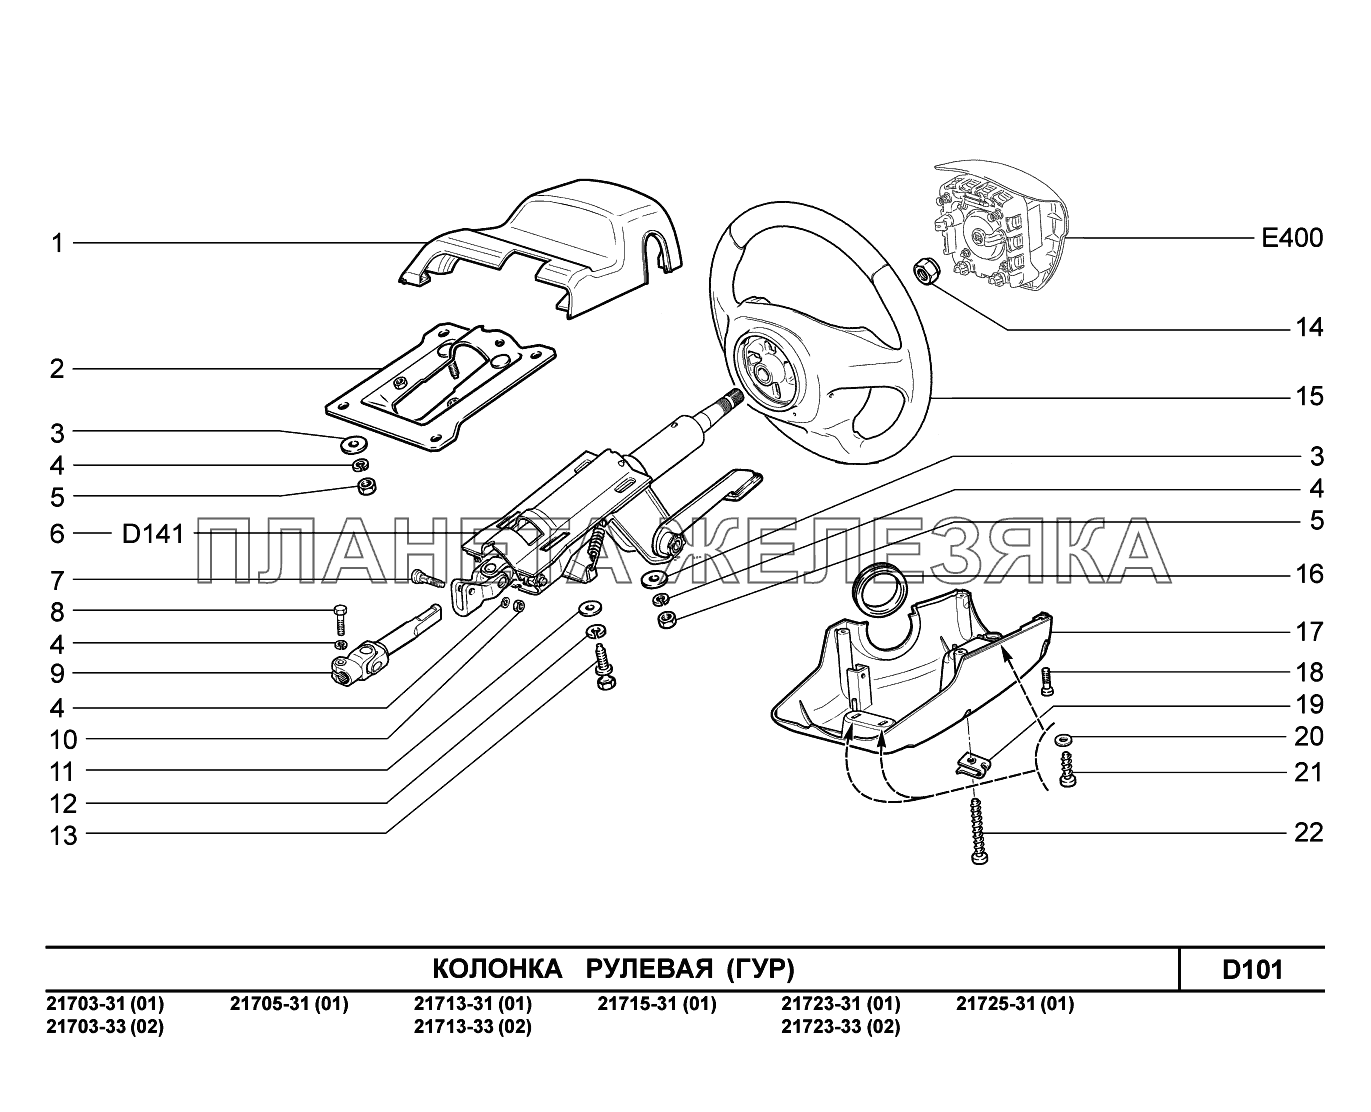 D101. Колонка рулевая ВАЗ-2170 